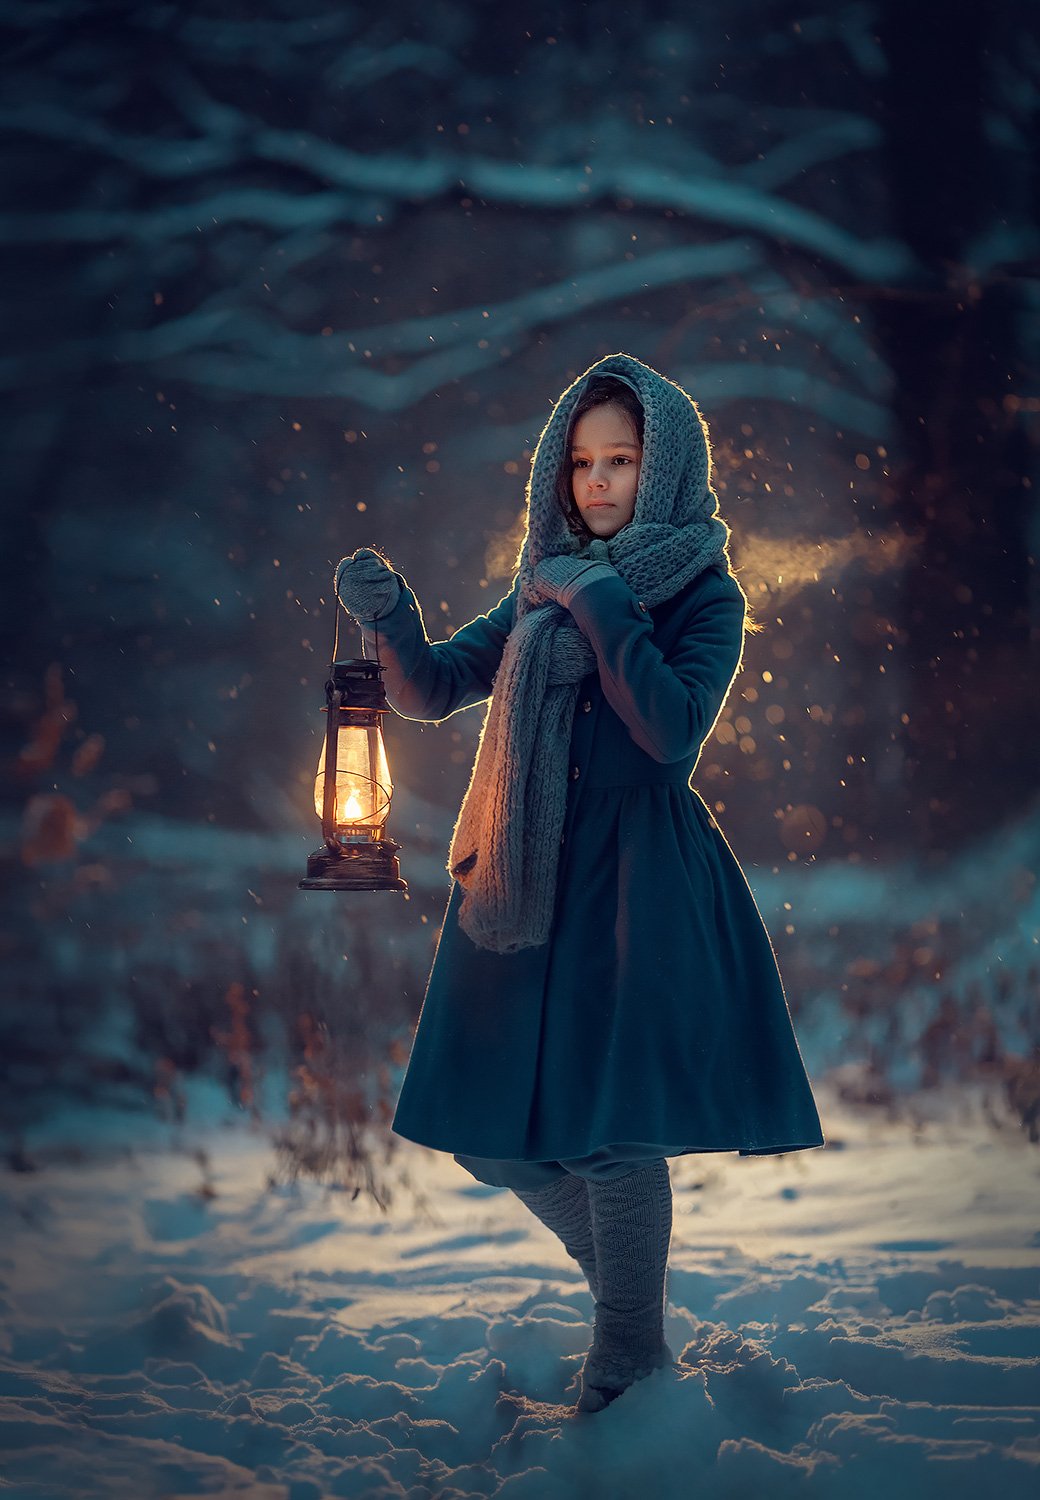 вечерняя фотография, фотосессия на природе, девушка, зима, Катрин Белоцерковская